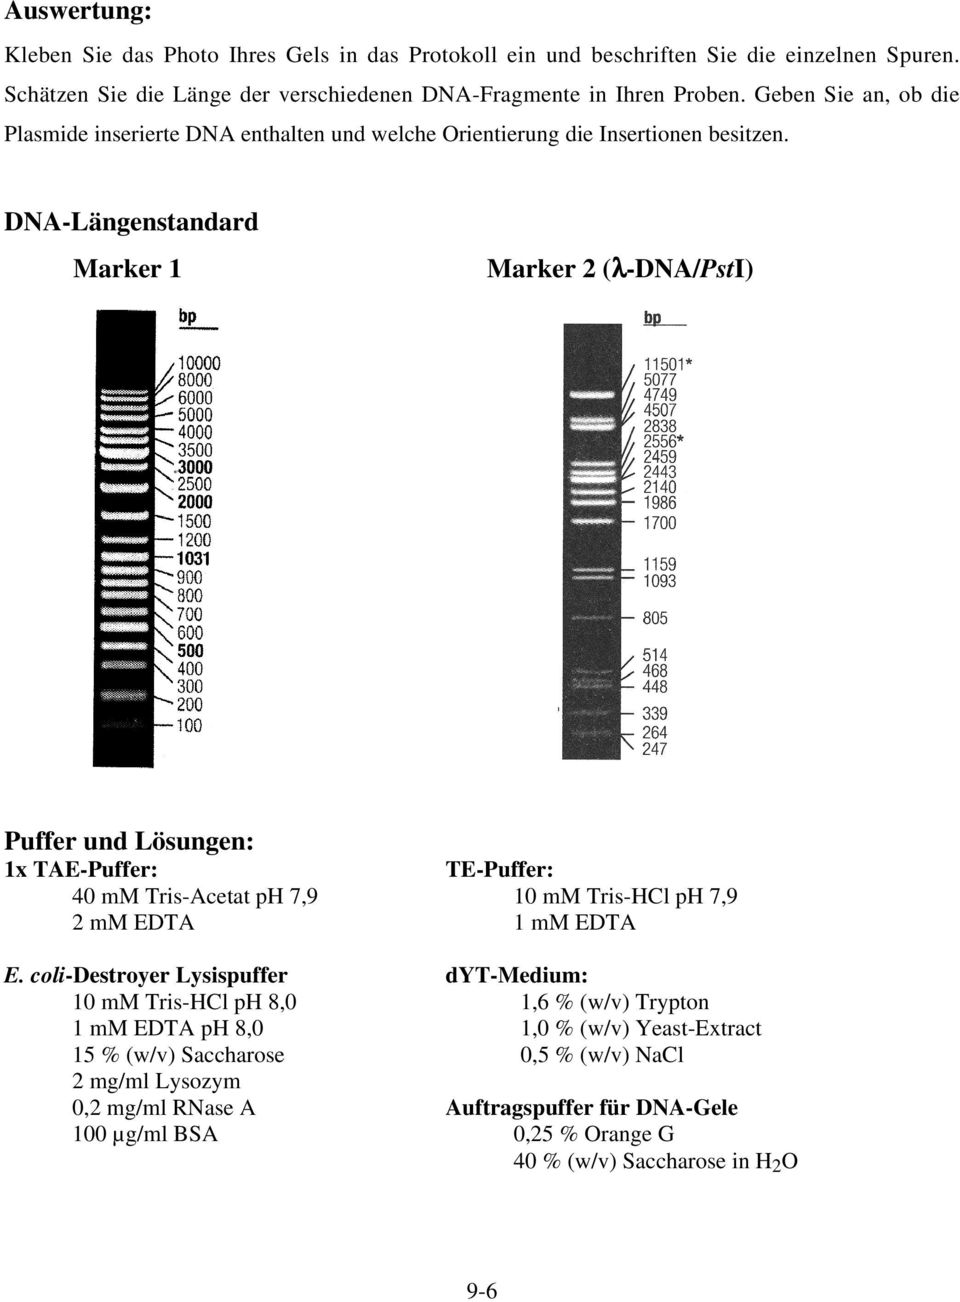 DNA-Längenstandard Marker 1 Marker 2 (λ-dna/psti) Puffer und Lösungen: 1x TAE-Puffer: TE-Puffer: 40 mm Tris-Acetat ph 7,9 10 mm Tris-HCl ph 7,9 2 mm EDTA 1 mm EDTA E.